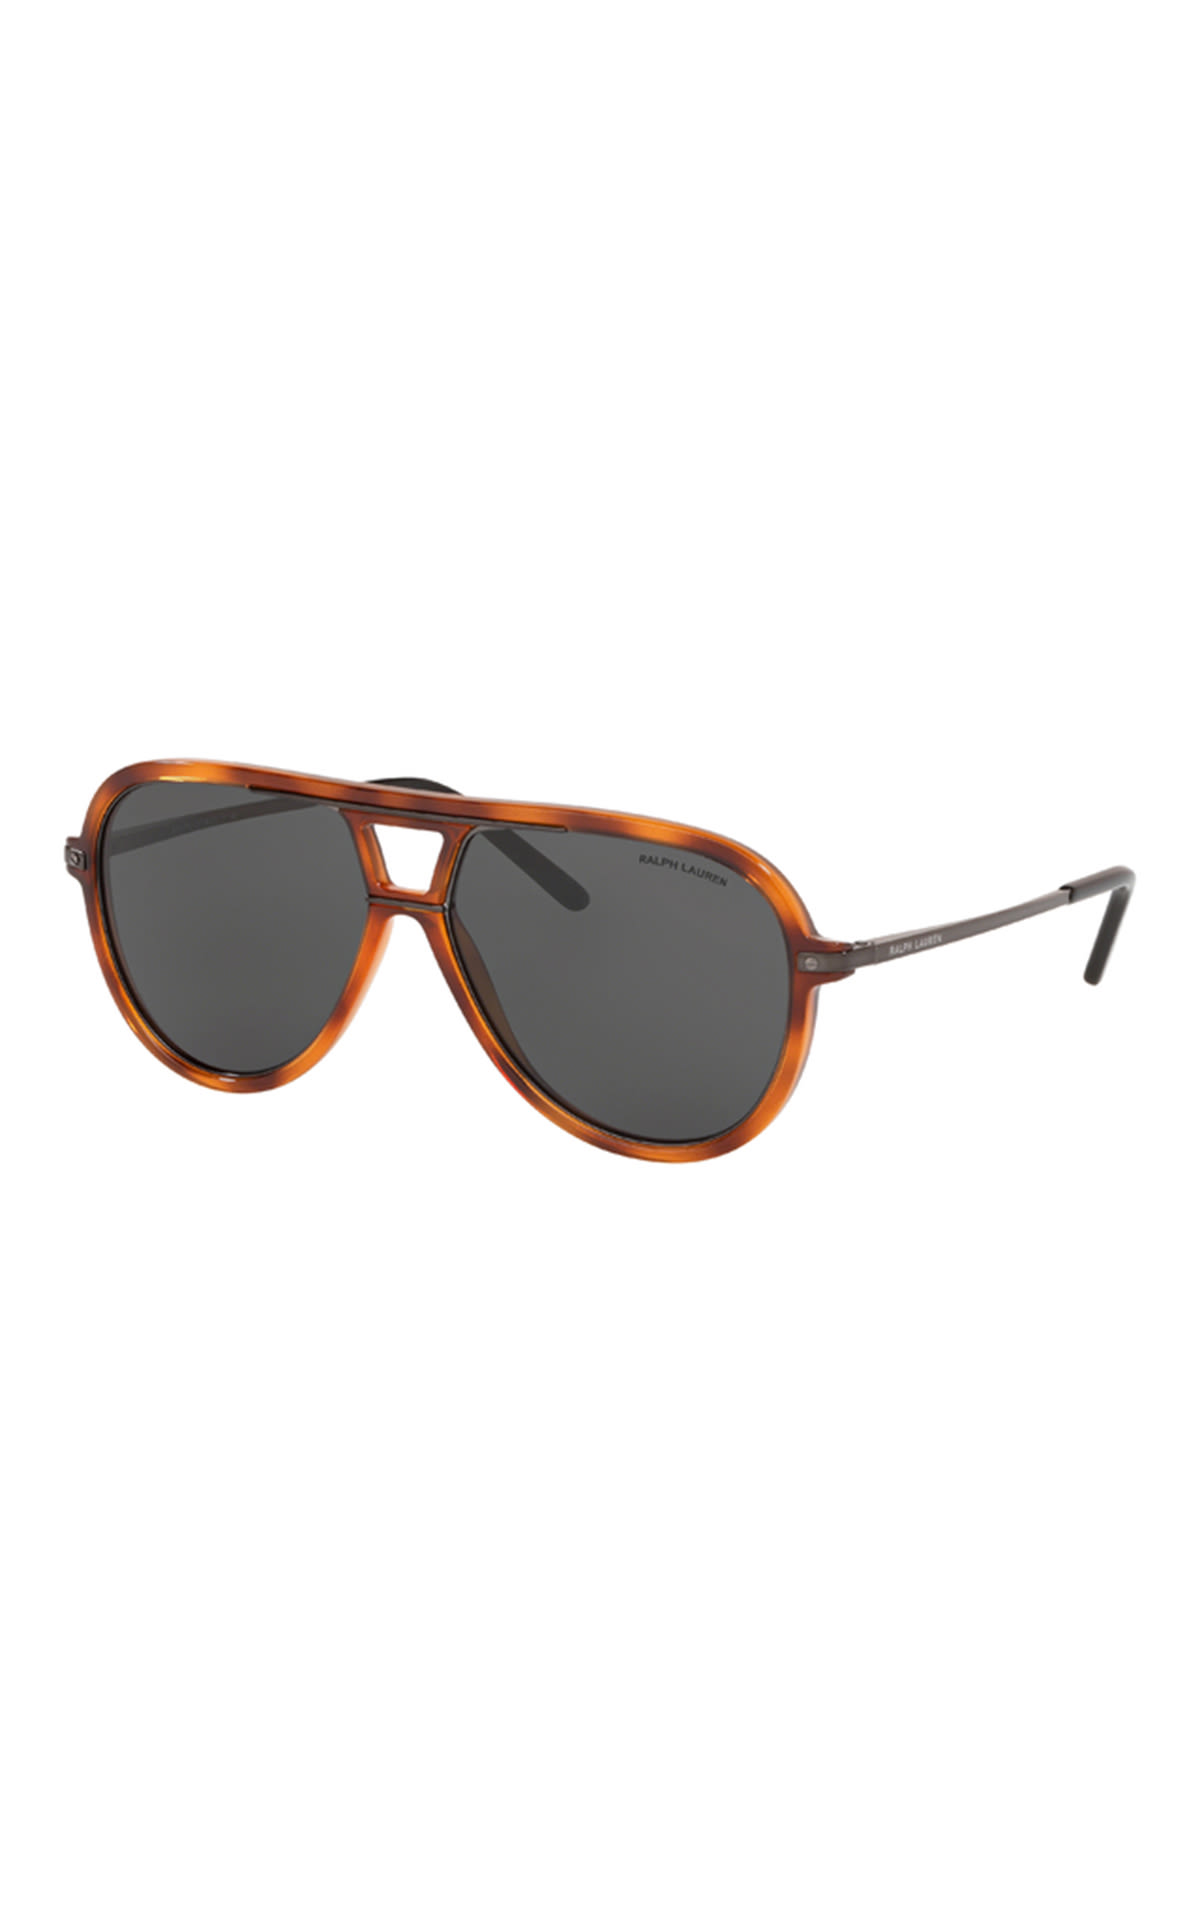 Sunglass Hut lunettes de soleil marron Polo Ralph Lauren homme La Vallée Village